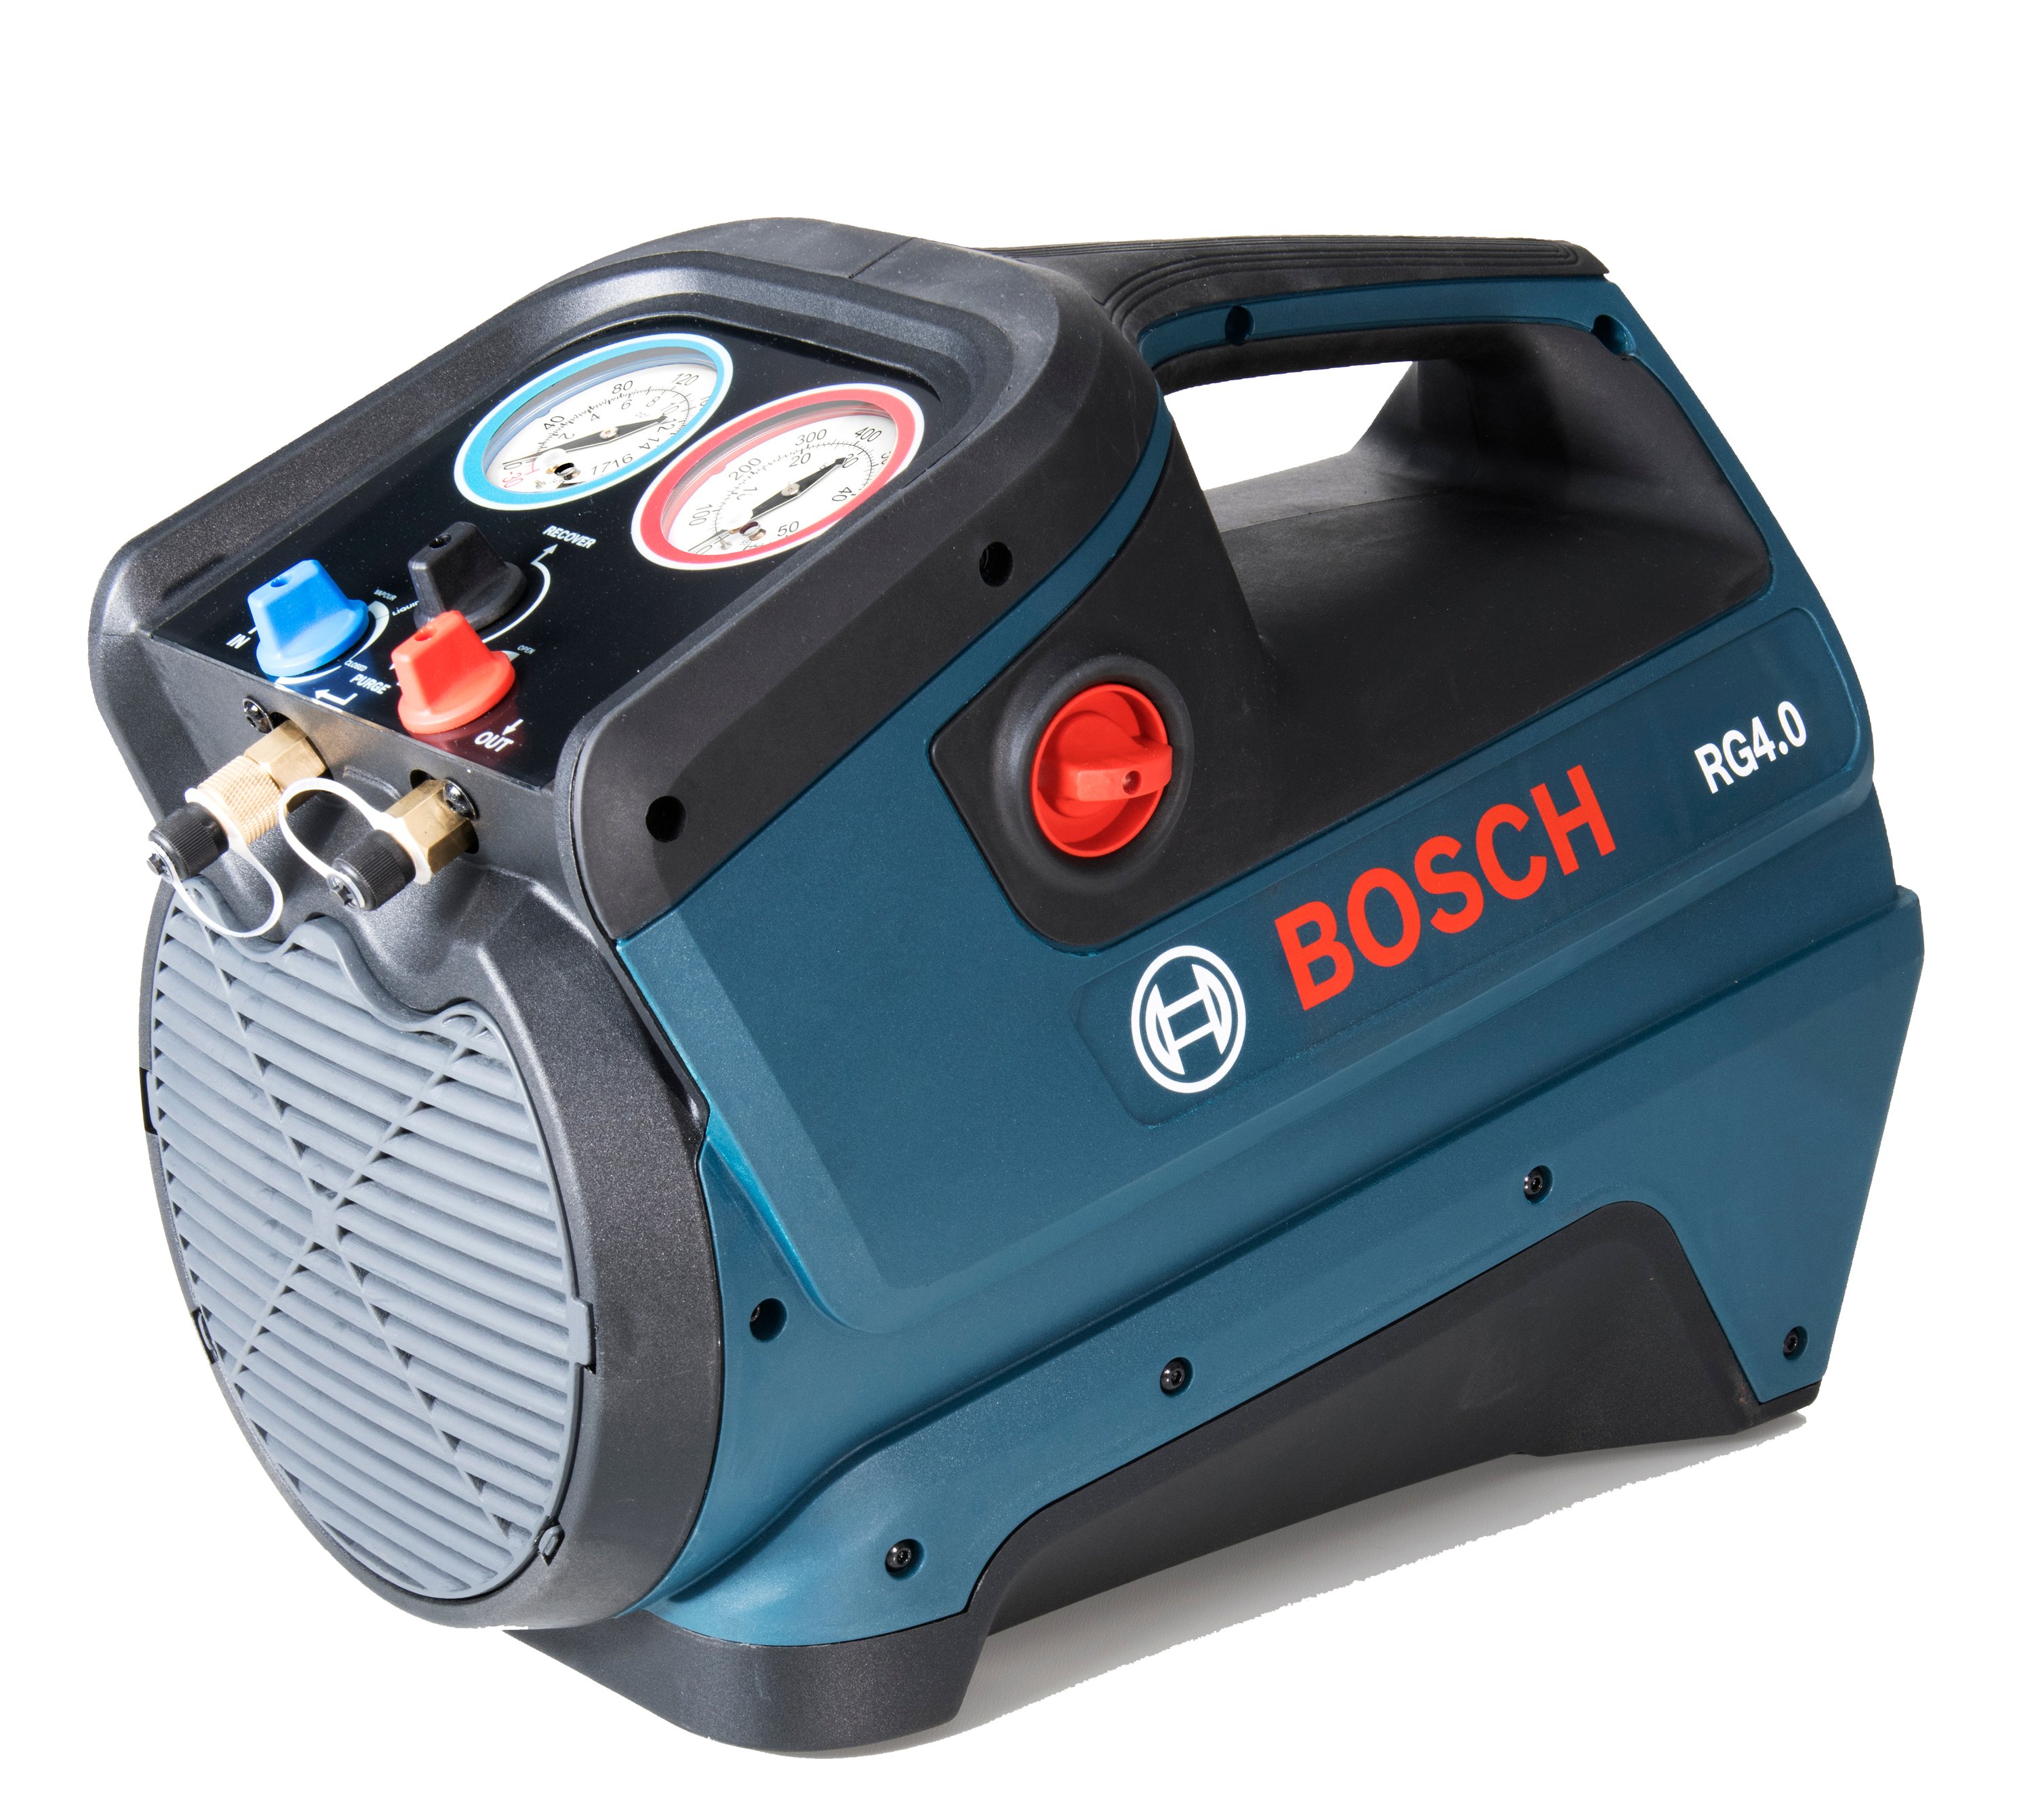 Absauggerät Bosch RG 4.0 - A2L und A3 zertifiziert